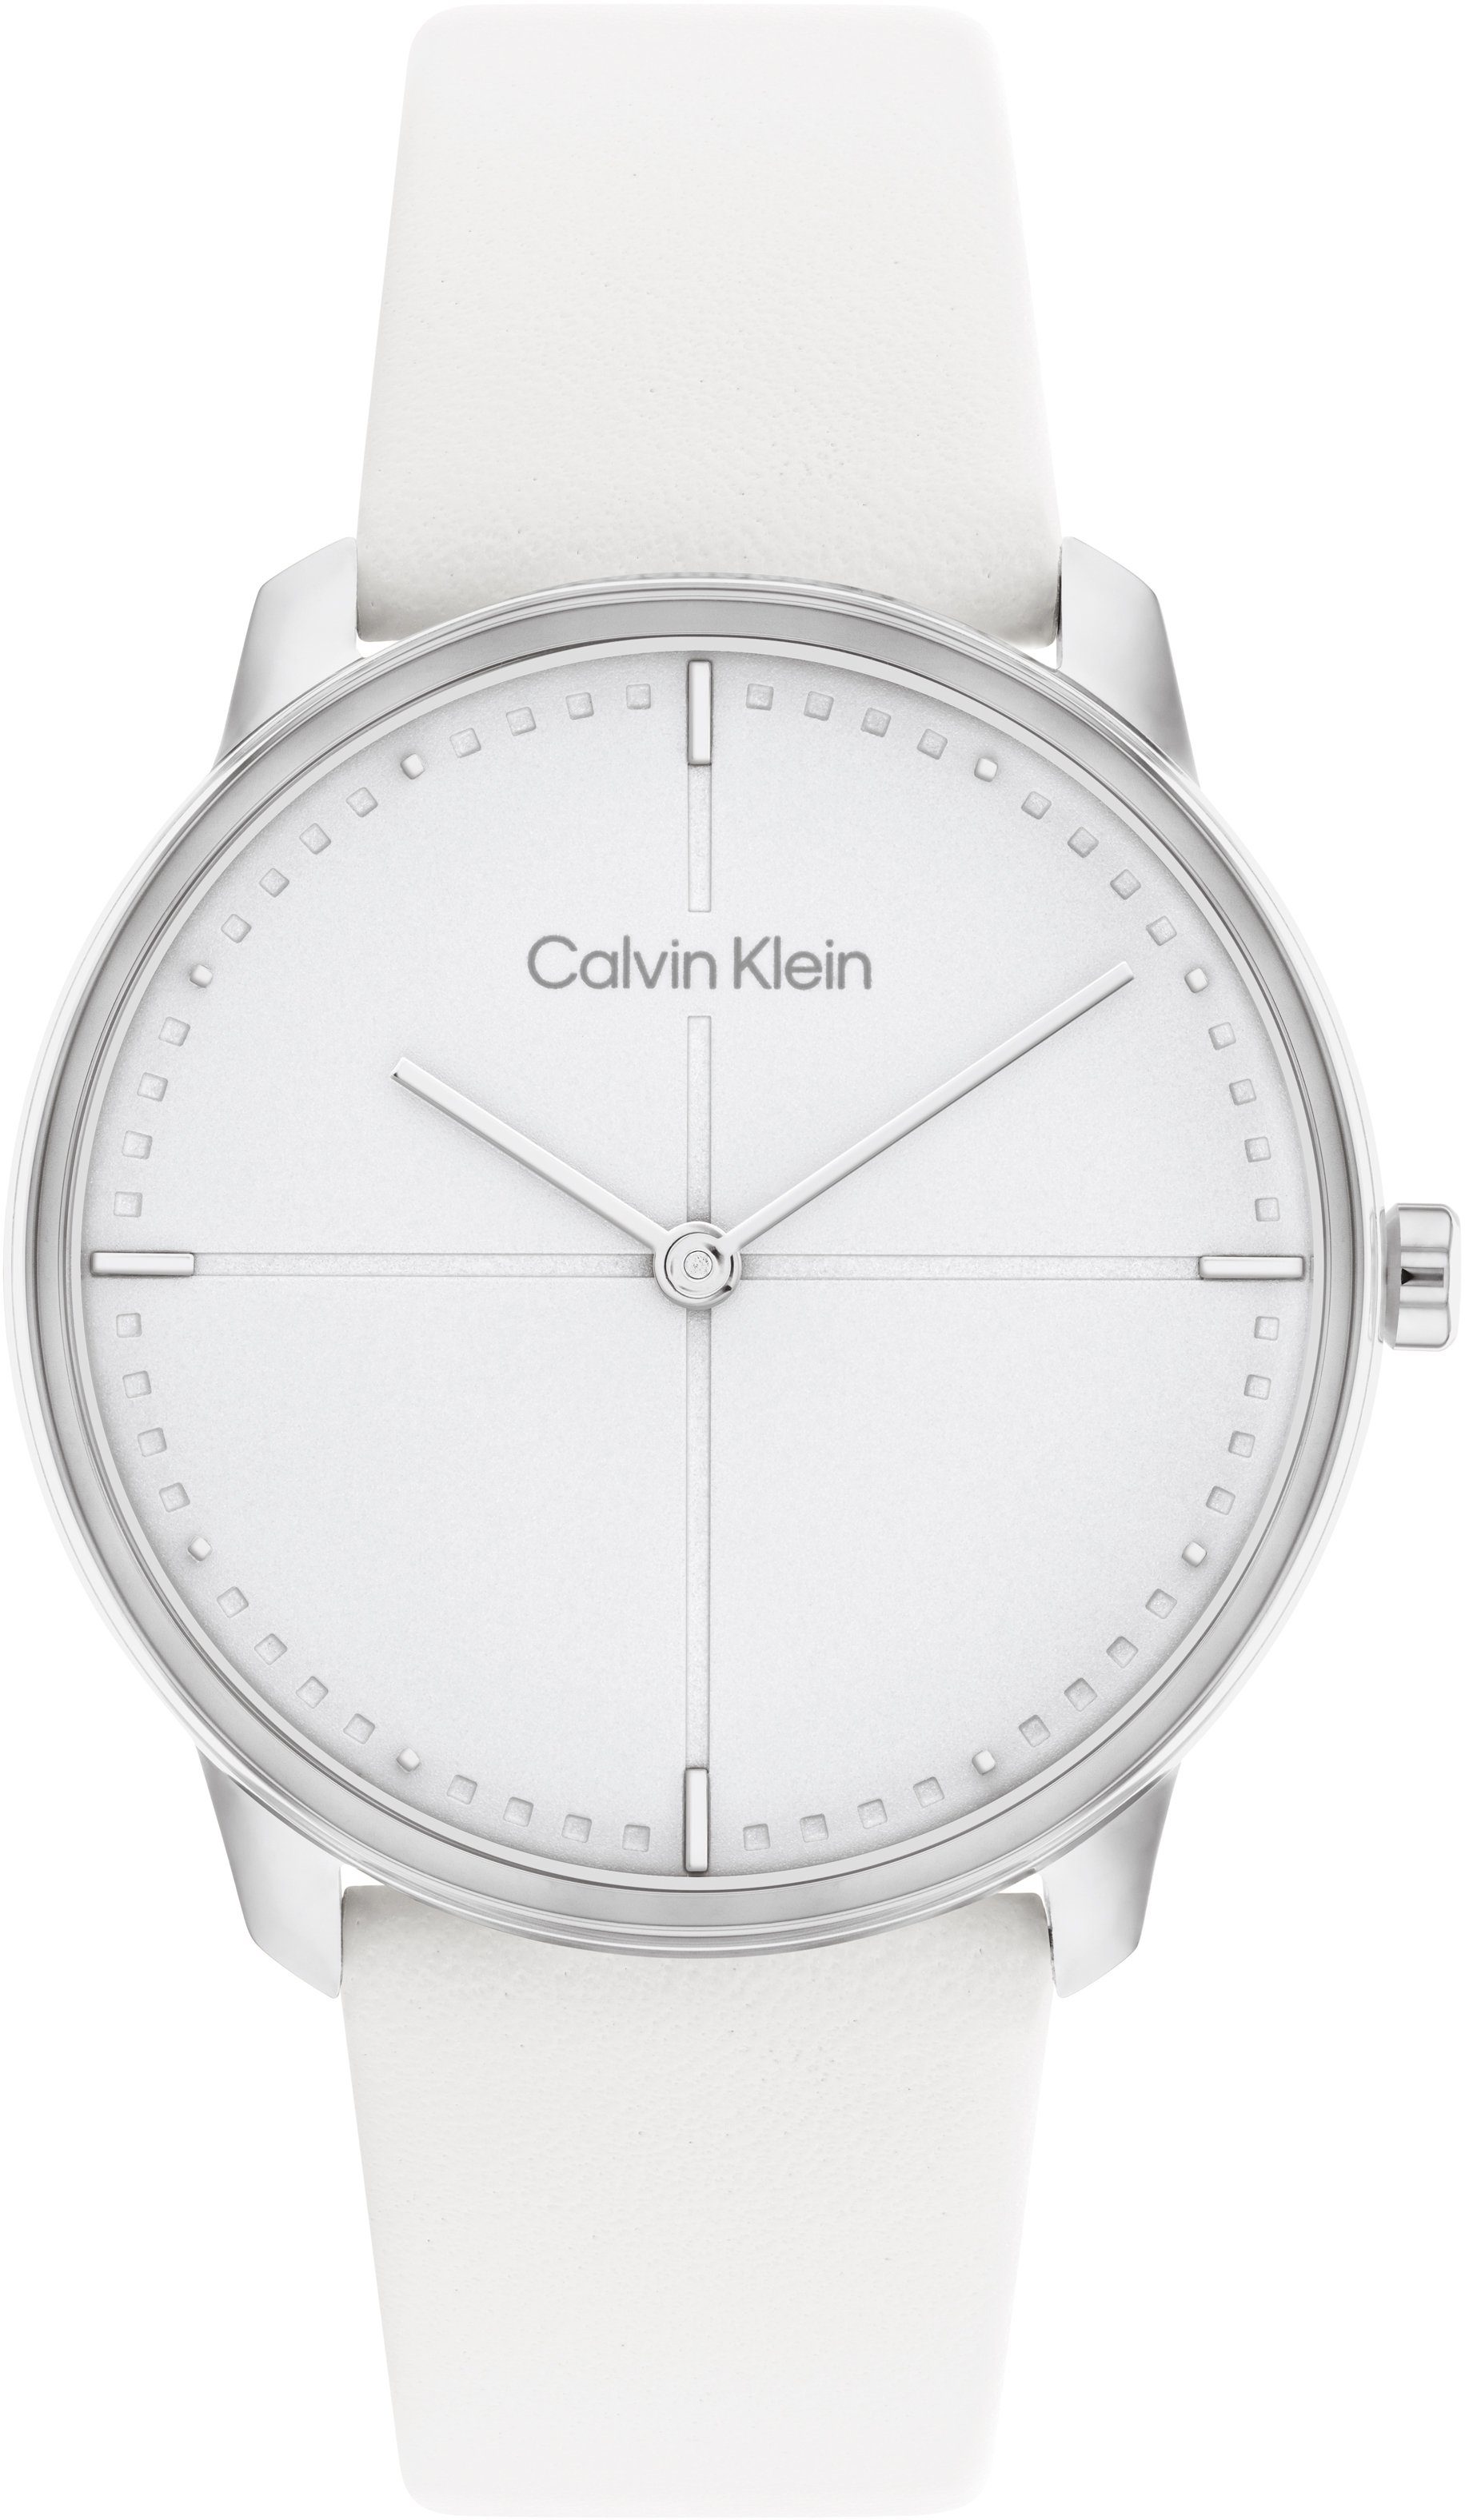 Calvin Klein Quarzuhr ICONIC 35 mm, 25200161, Armbanduhr, Damenuhr, Mineralglas